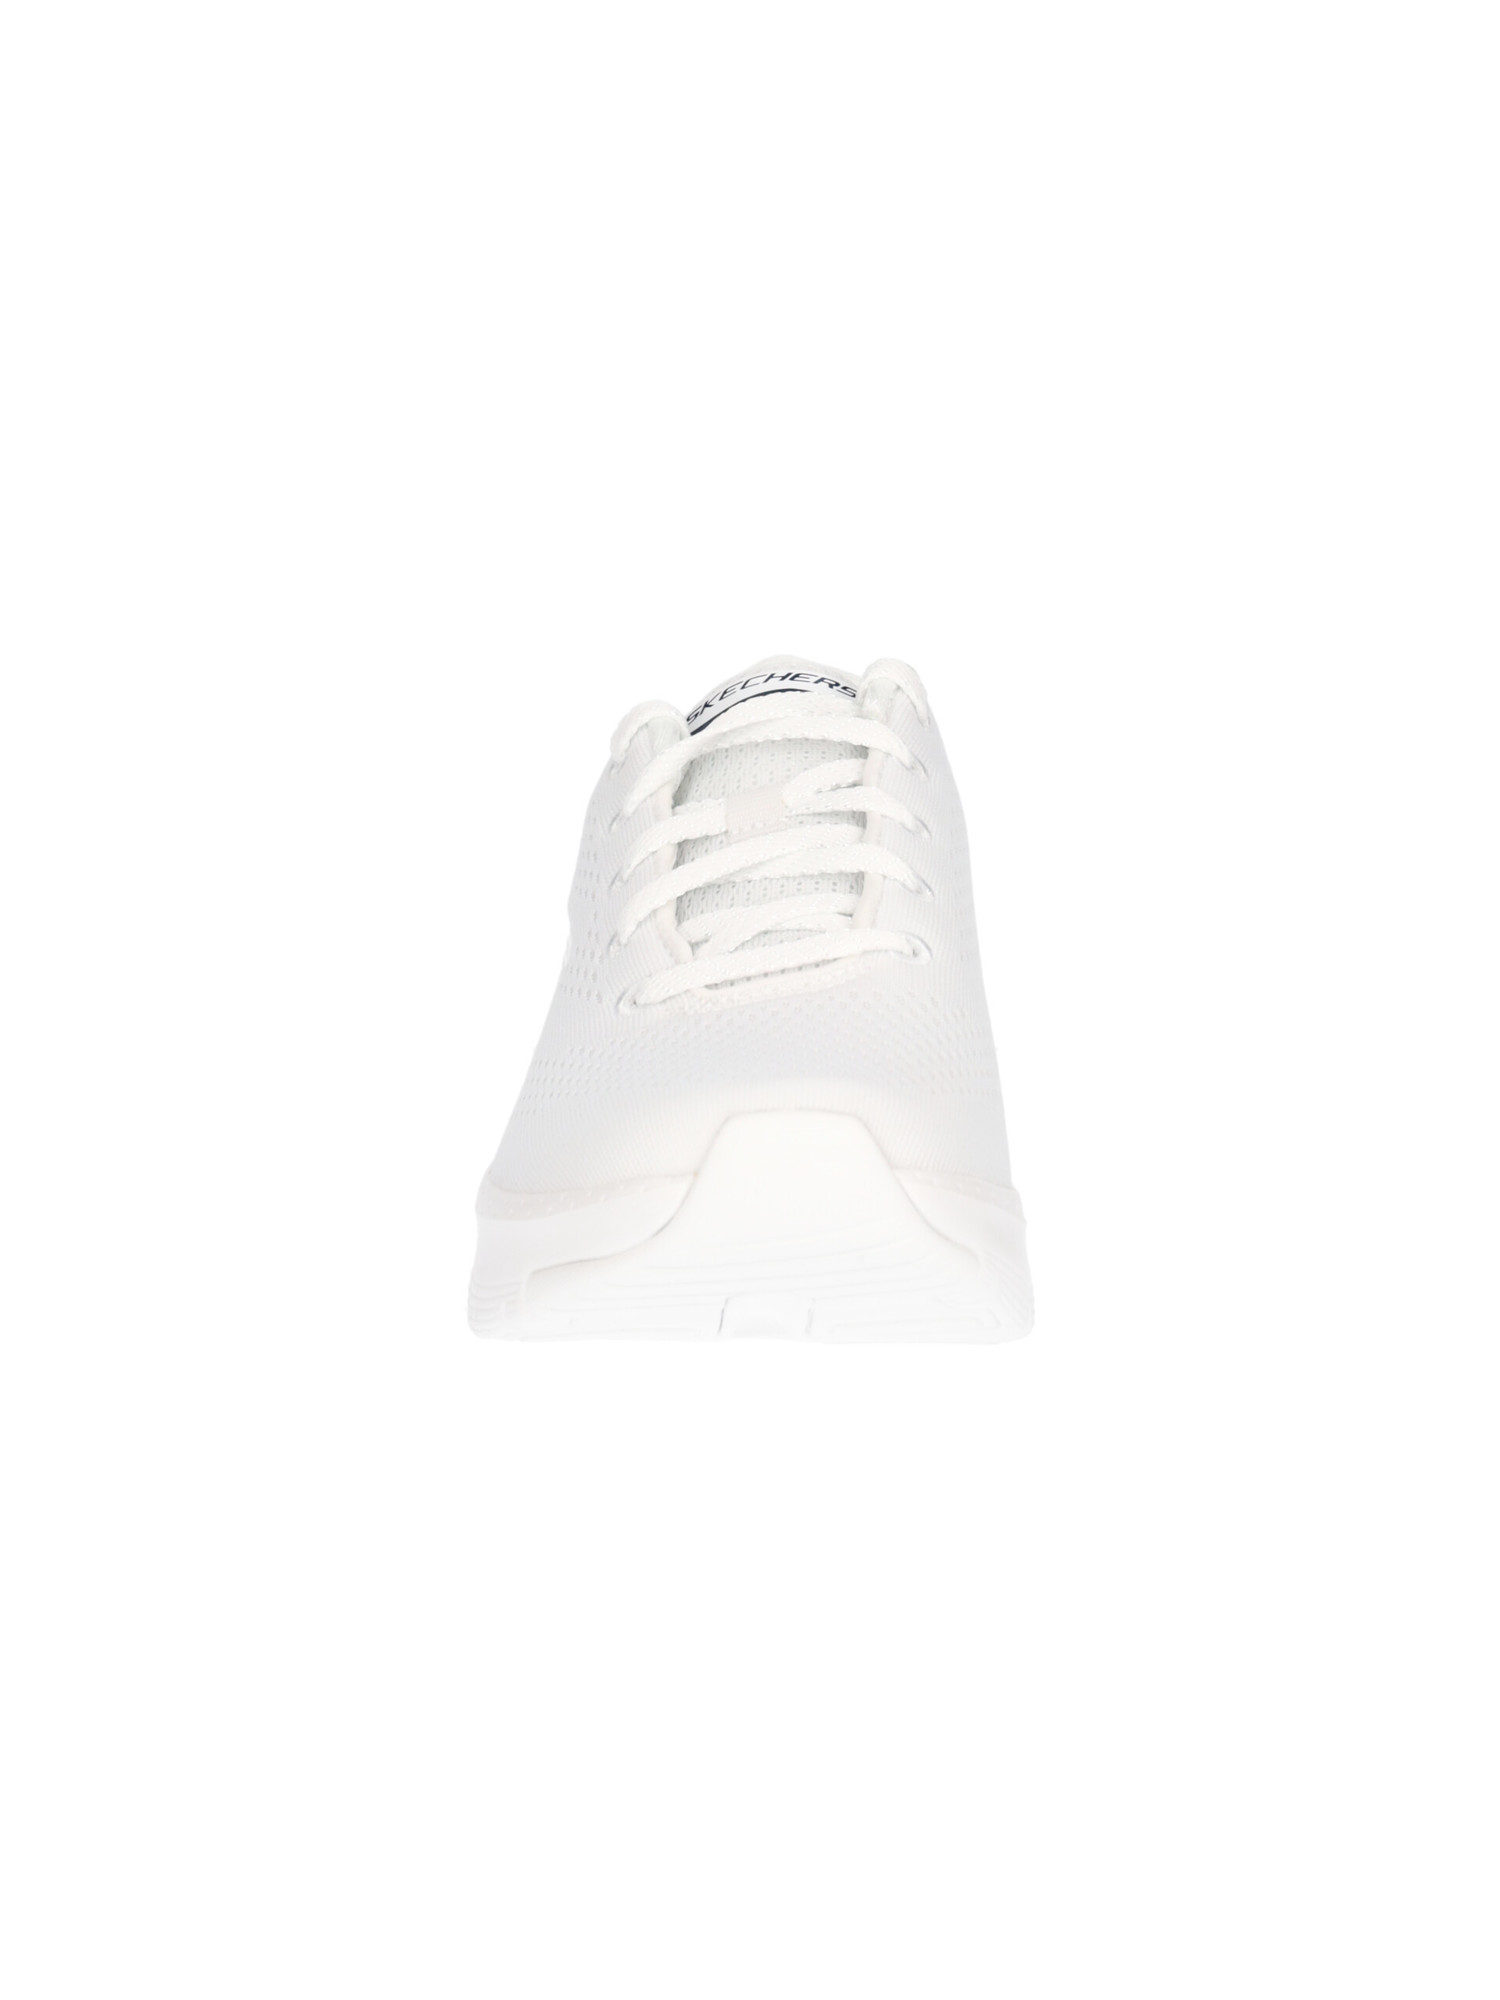 sneaker-skechers-archfit-da-donna-bianca-853543